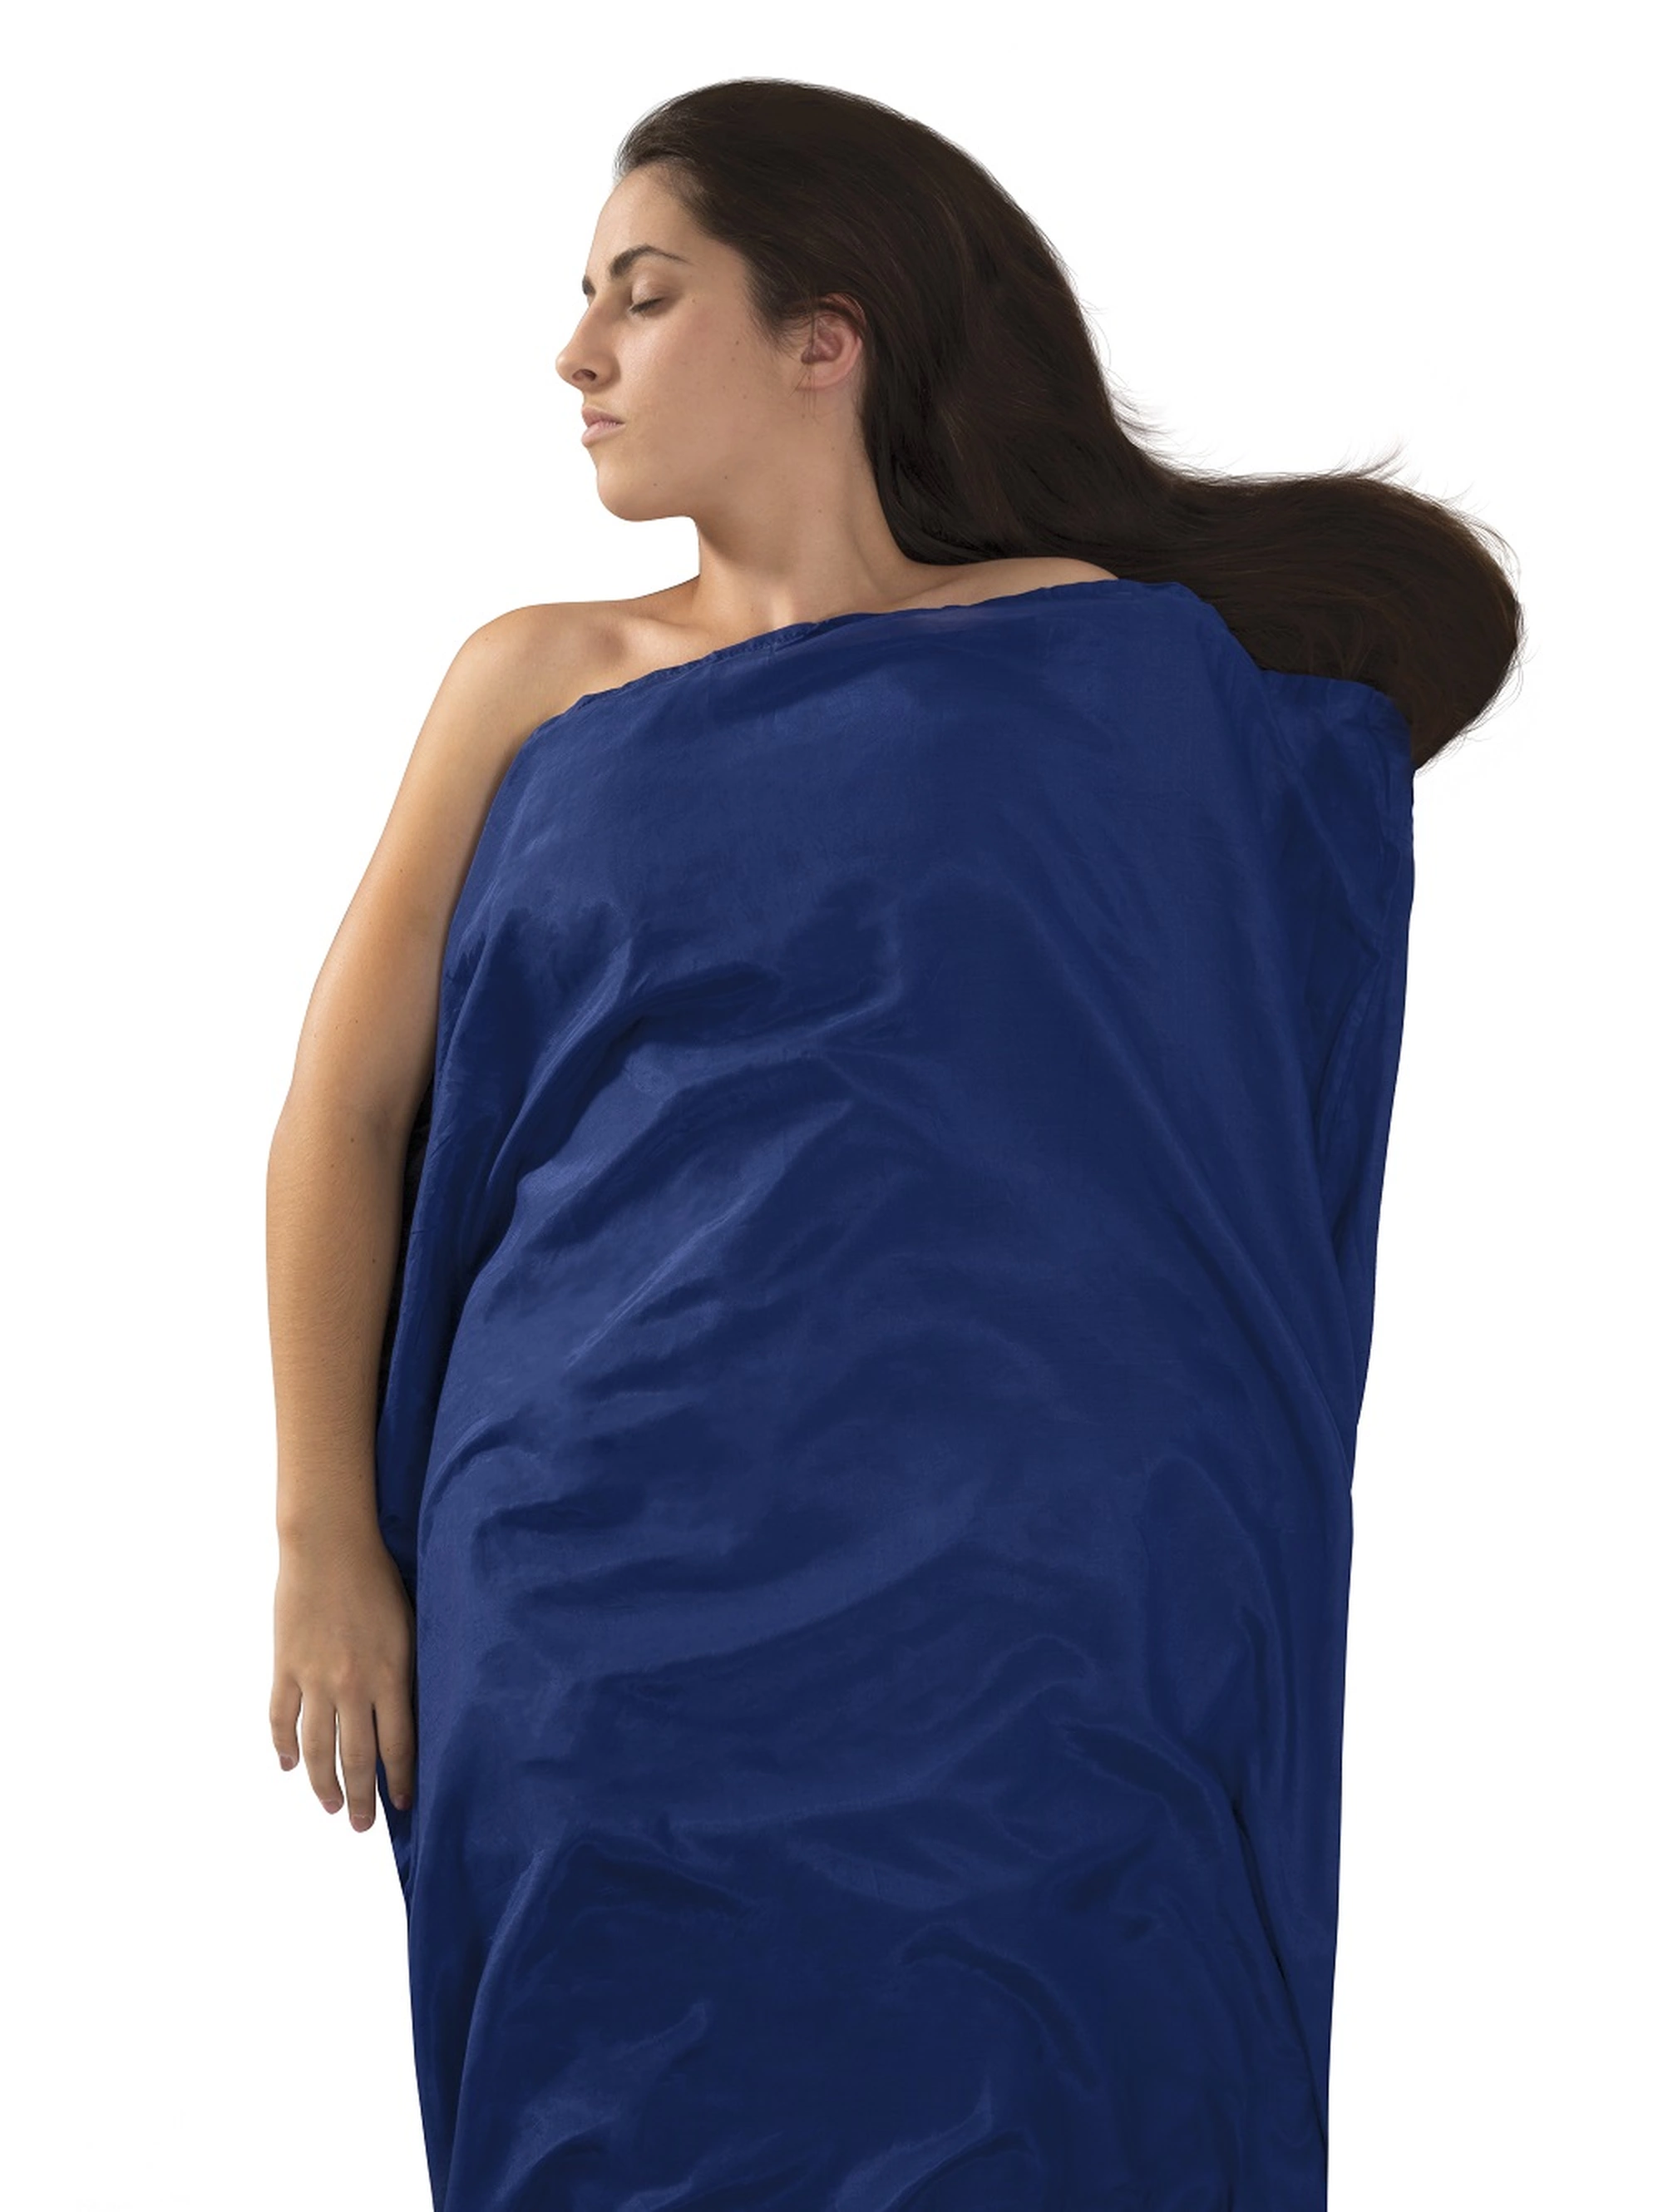 Hüttenschlafsäcke: Eine Zusatzschicht für den erholsamen Schlaf